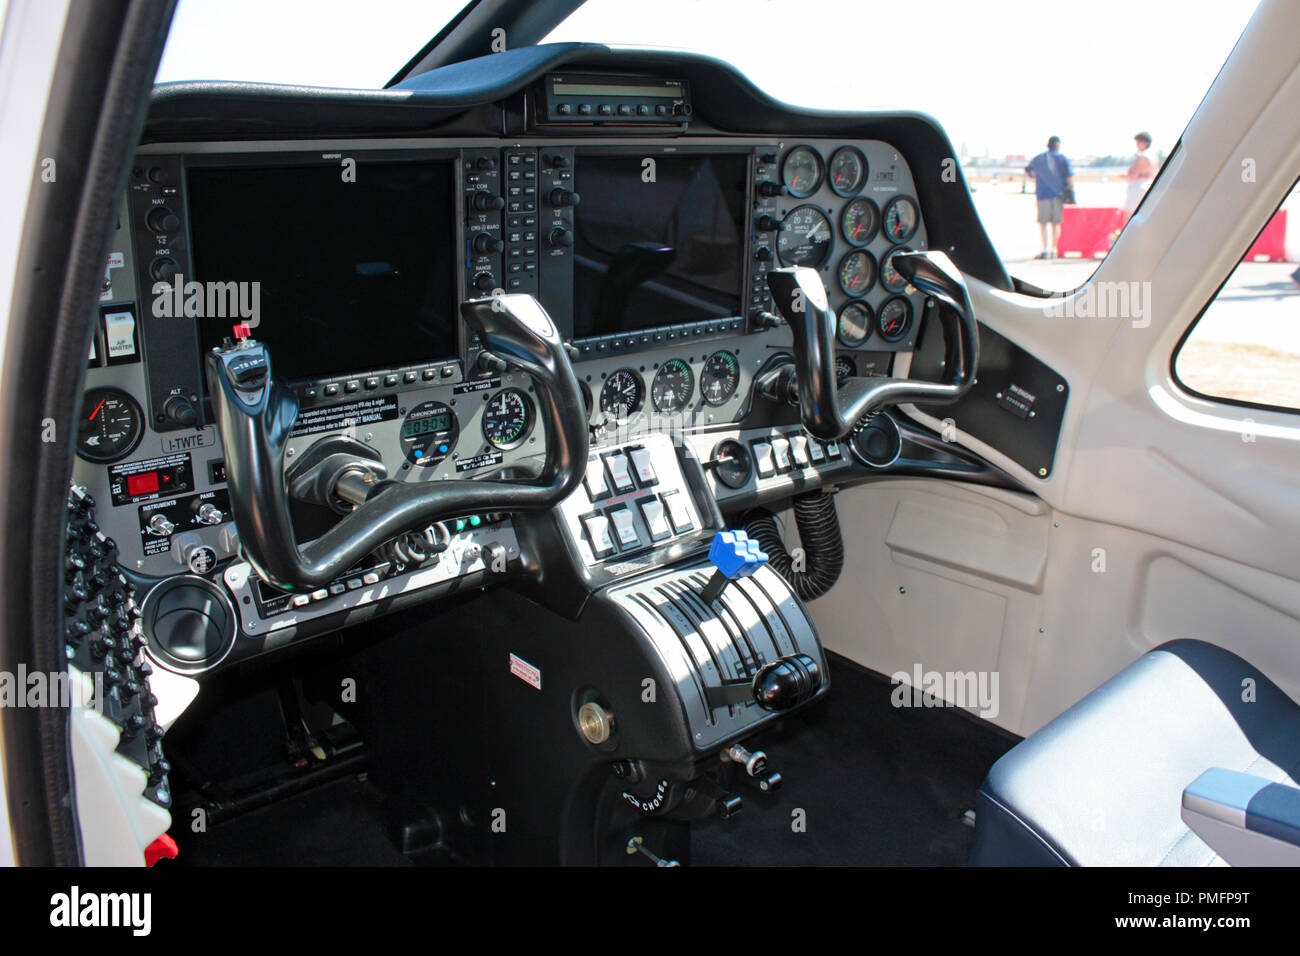 Tecnam P2006T luz interior de cabina de aeronaves con modernas pantallas de visualización en el panel de instrumentos Foto de stock